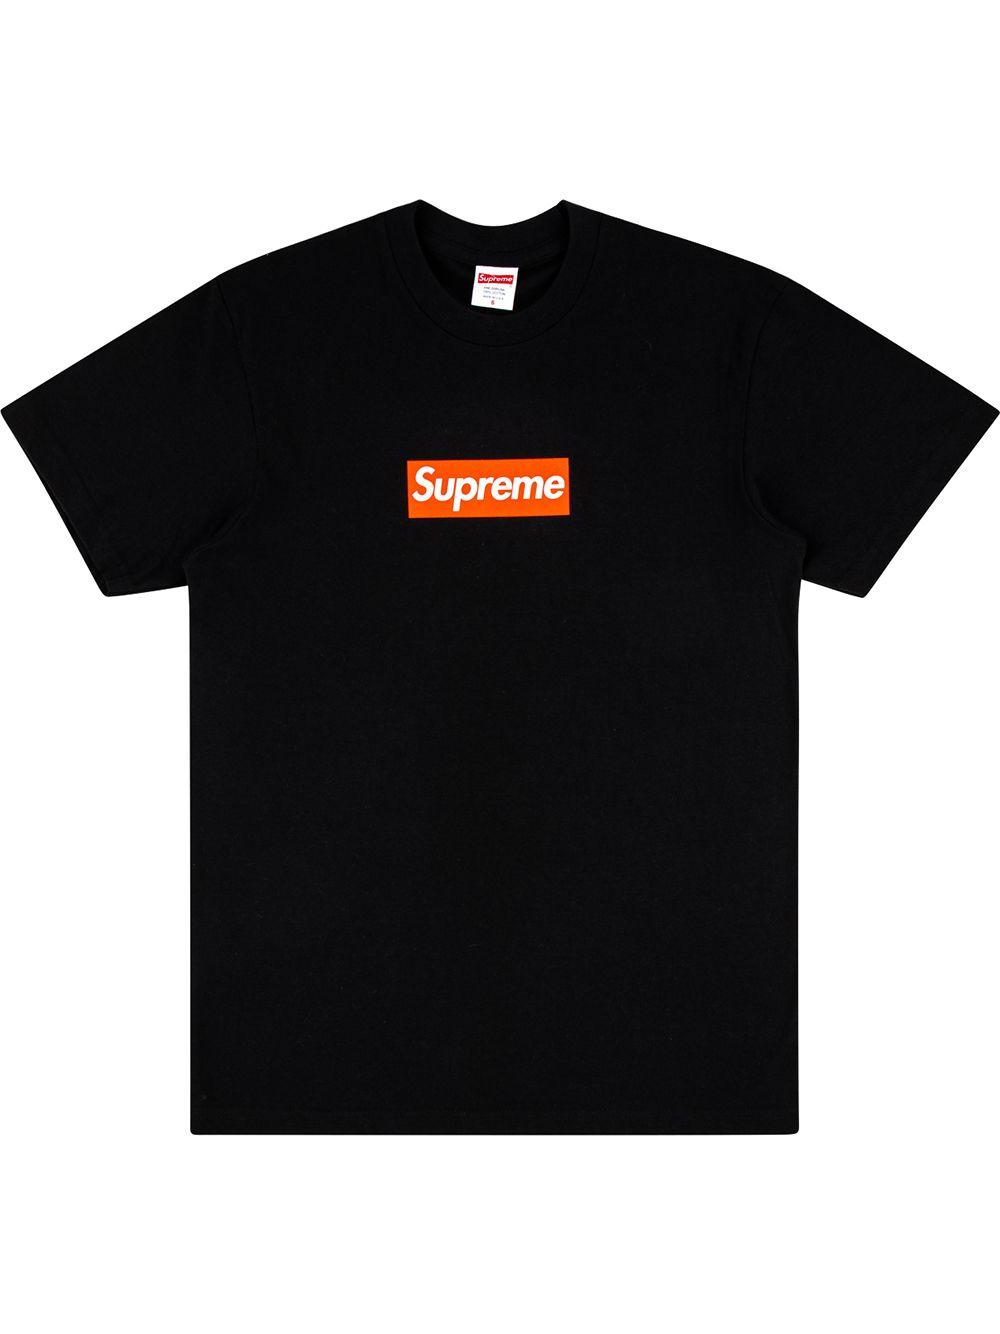 Supreme San Francisco Box Logo Tee in Black for Men